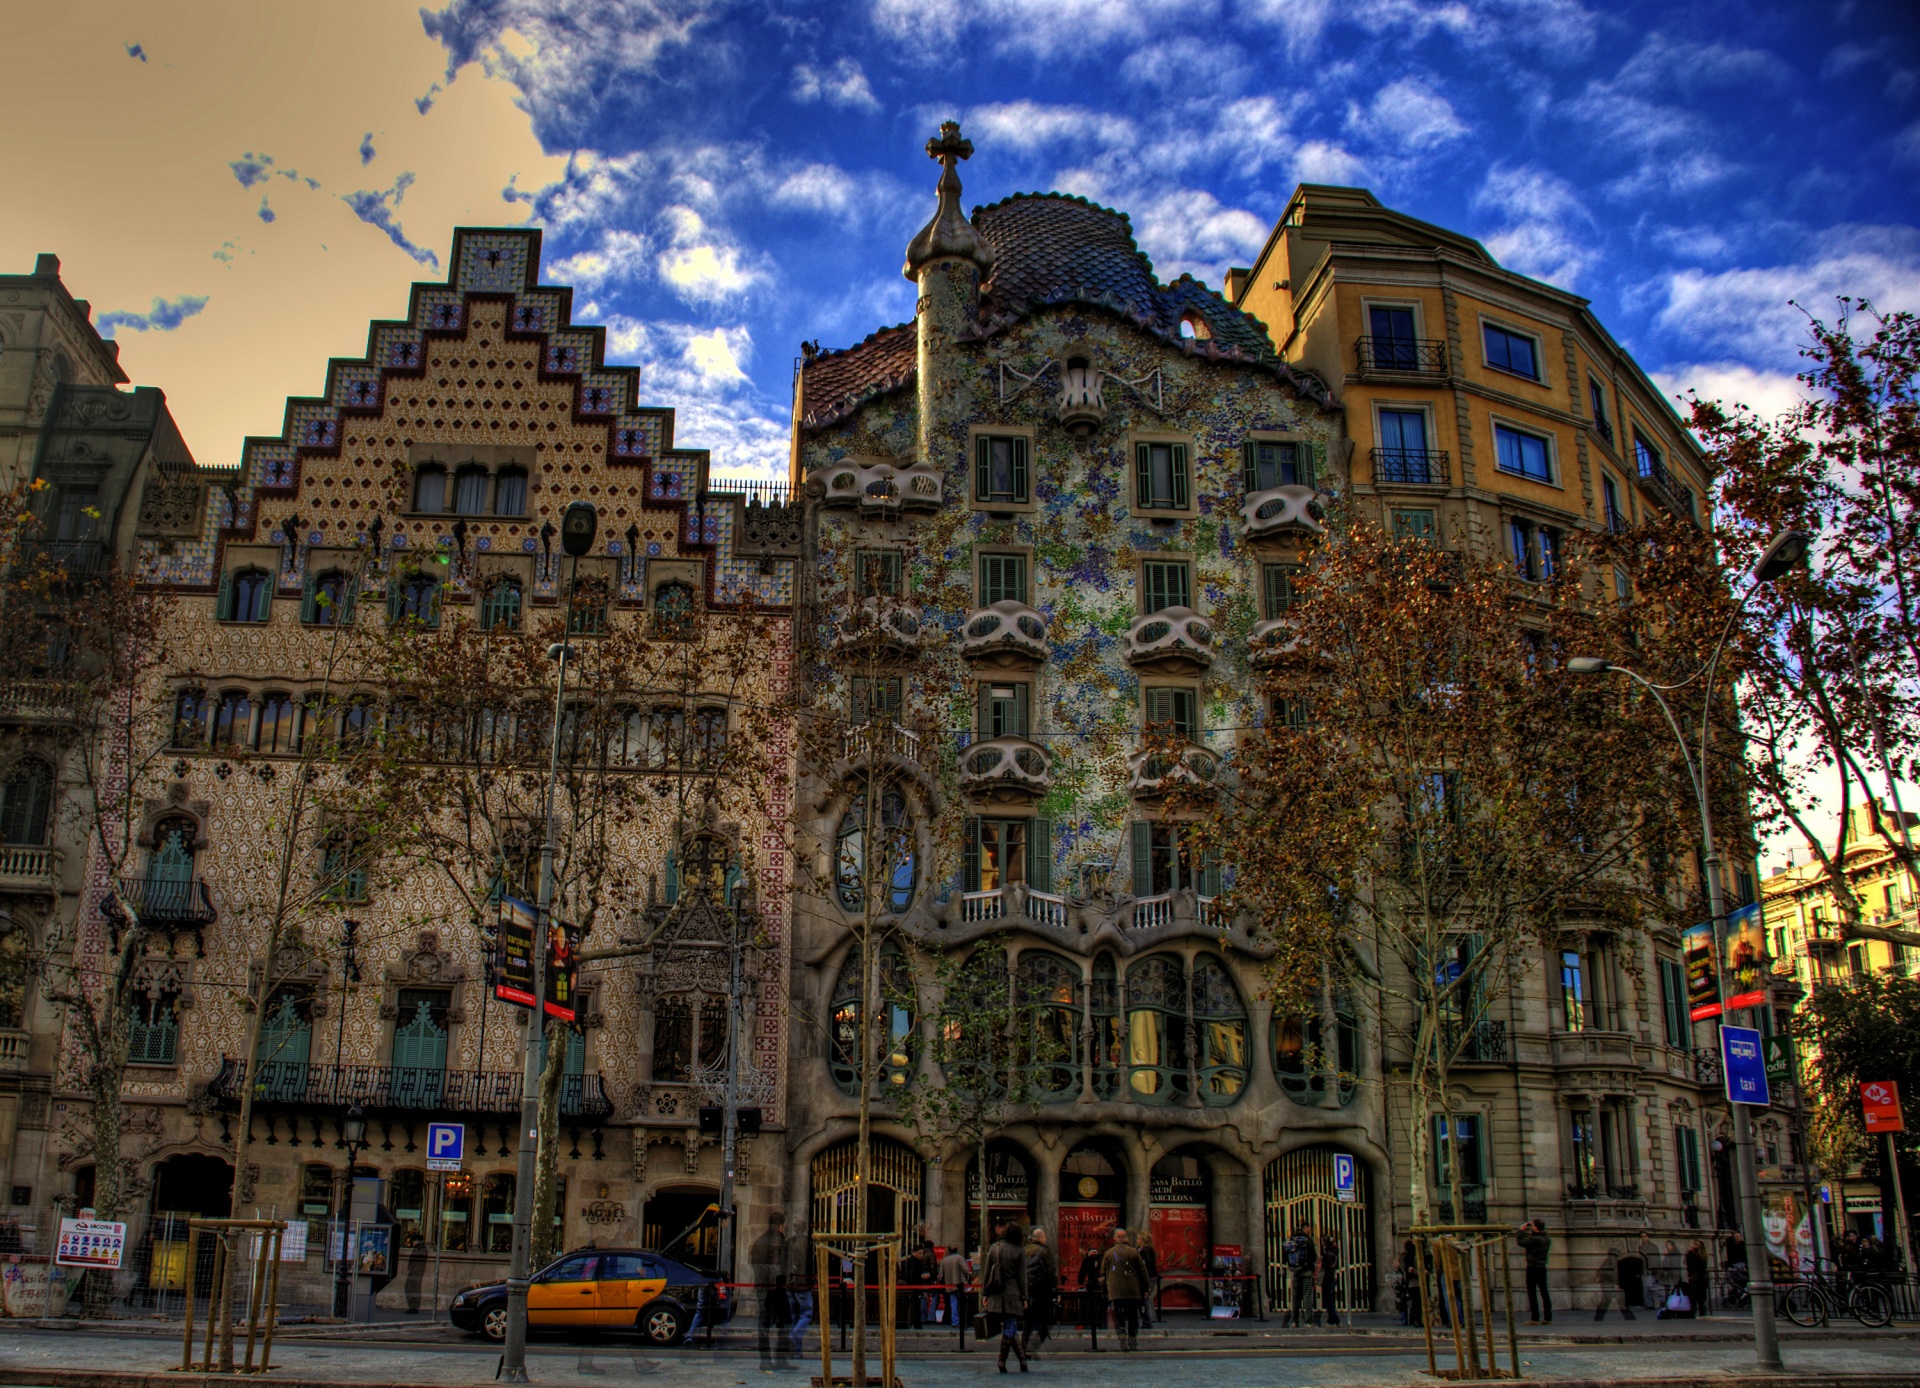 Скачать обои бесплатно Архитектура, Город, Здание, Hdr, Испания, Фотографии, Барселона картинка на рабочий стол ПК